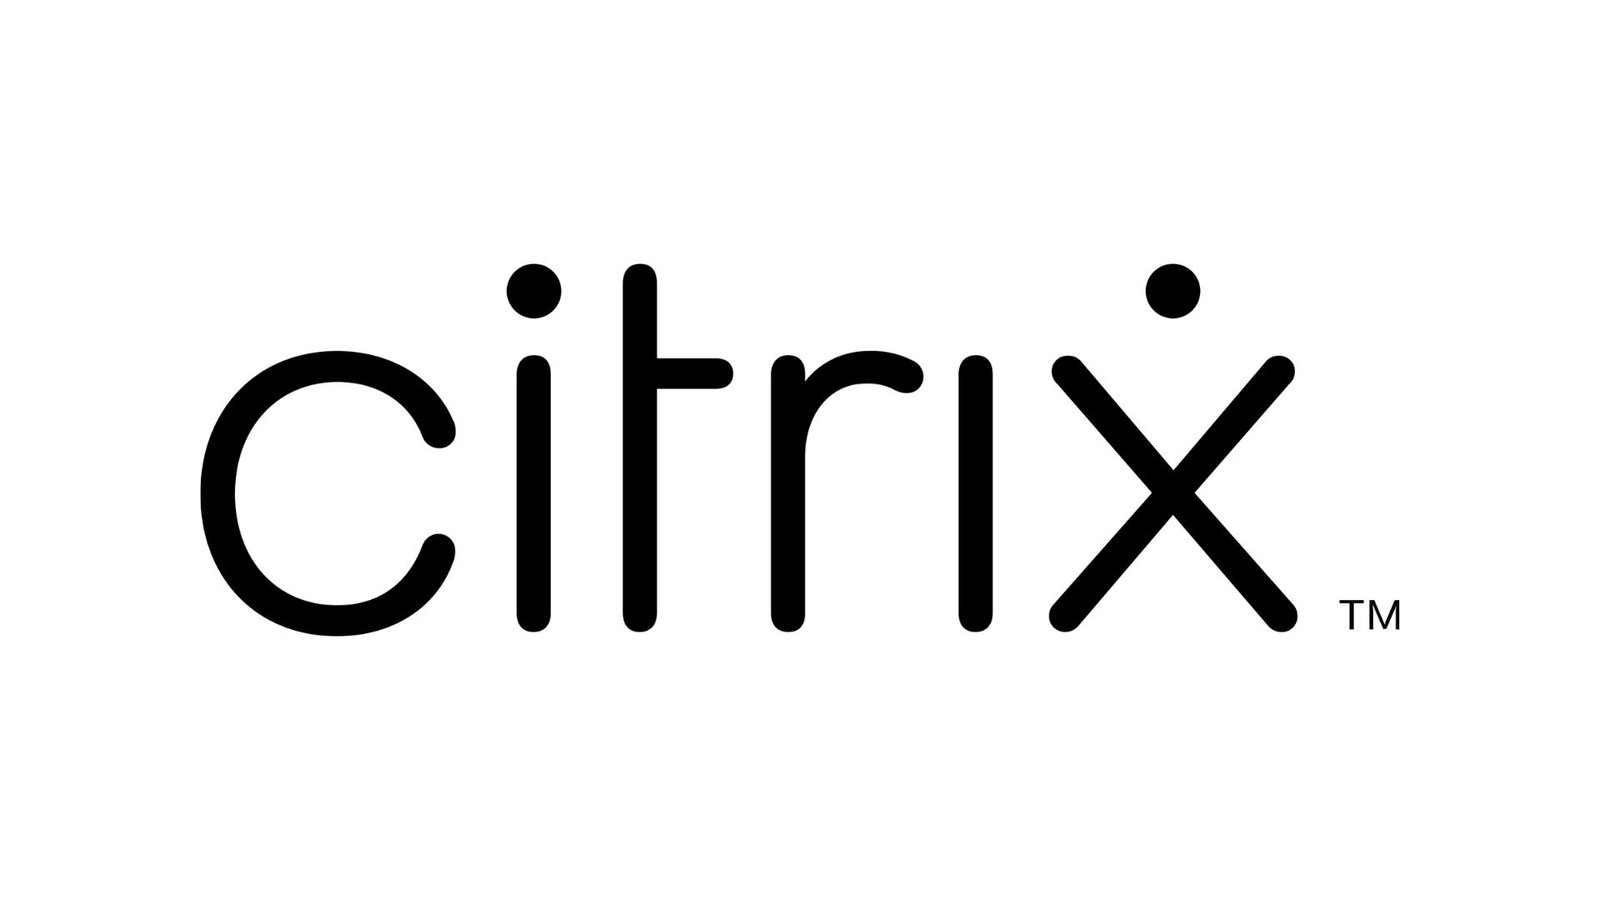 citrix